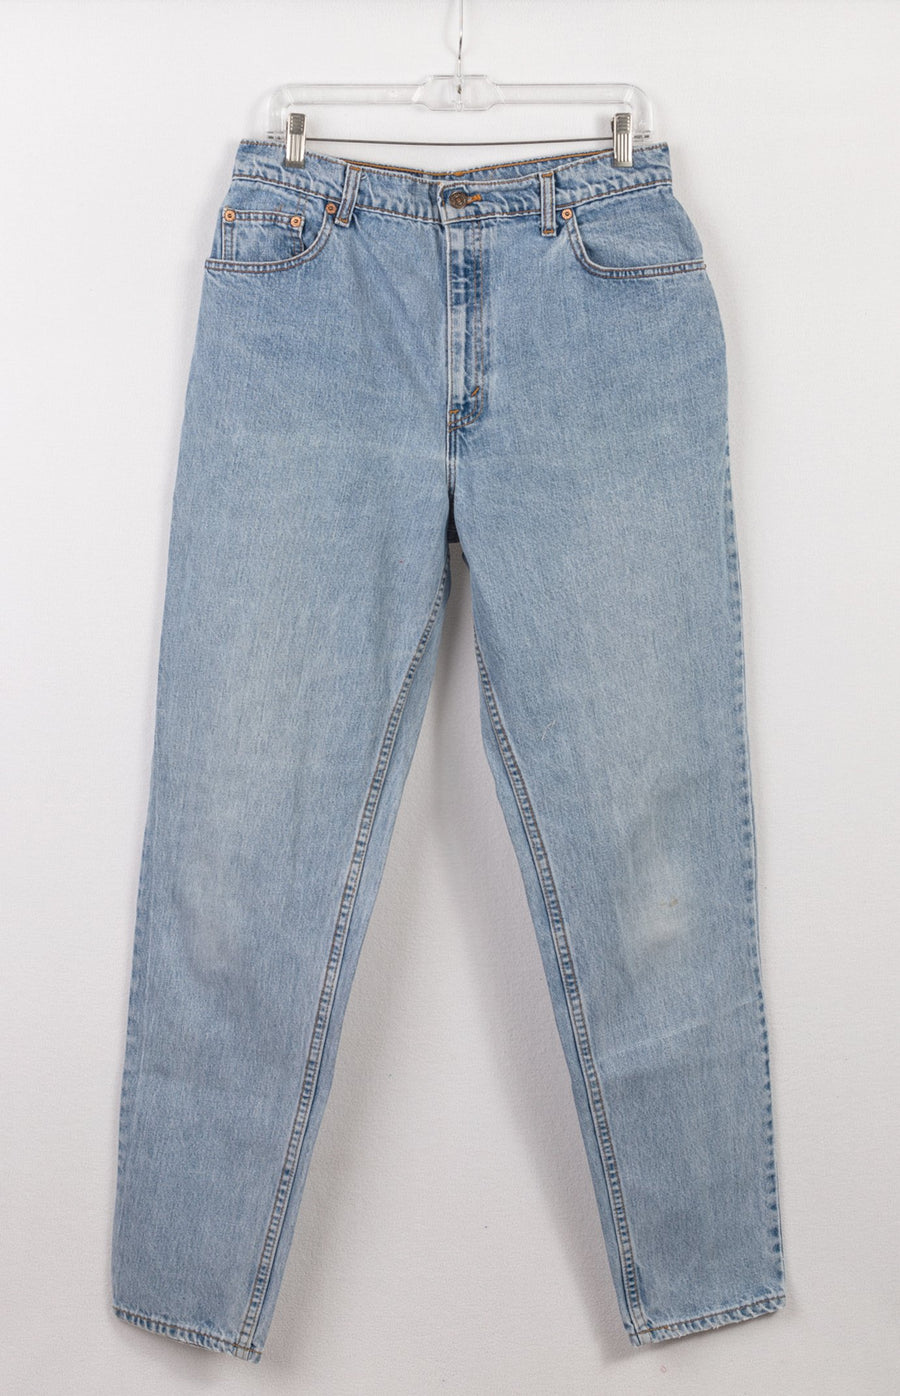 Levi's 551 Jeans | Vintage Levis Jeans | Retro Denim – GOAT Vintage